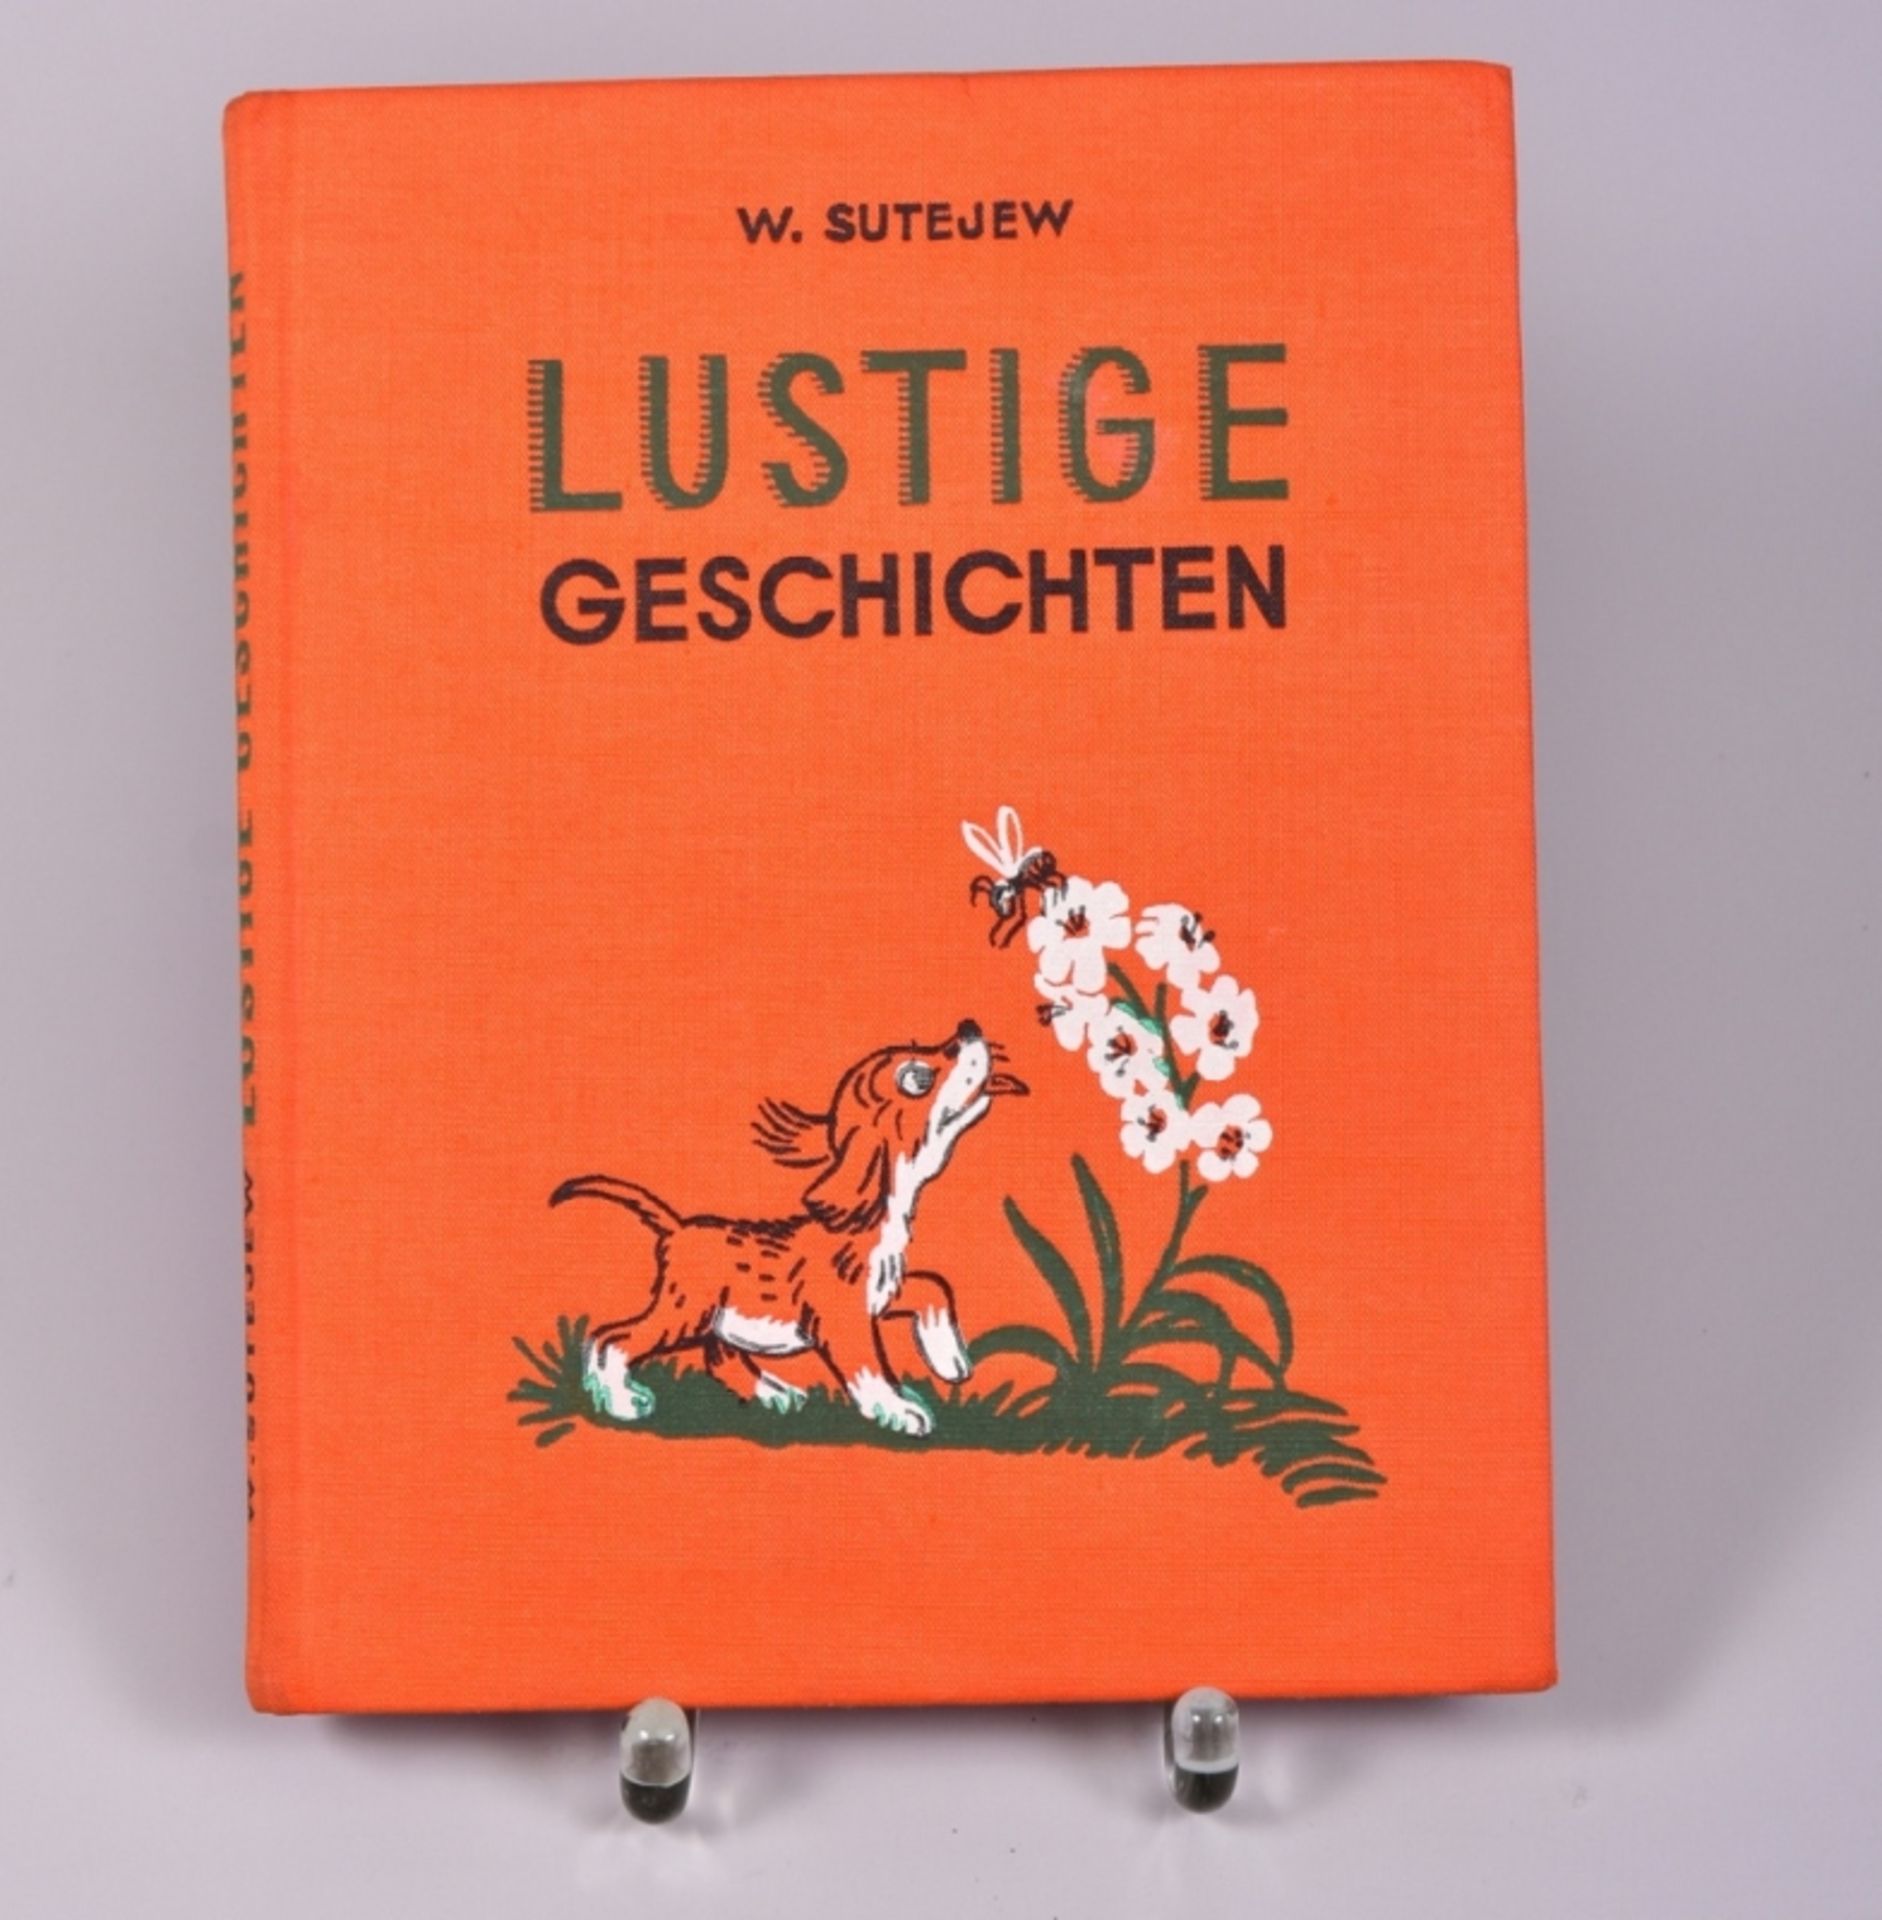 Kinderbuch "Lustige Geschichten" v. W. Sutejew mit sehr schönen Zeichnungen des Verfassers, Verlag